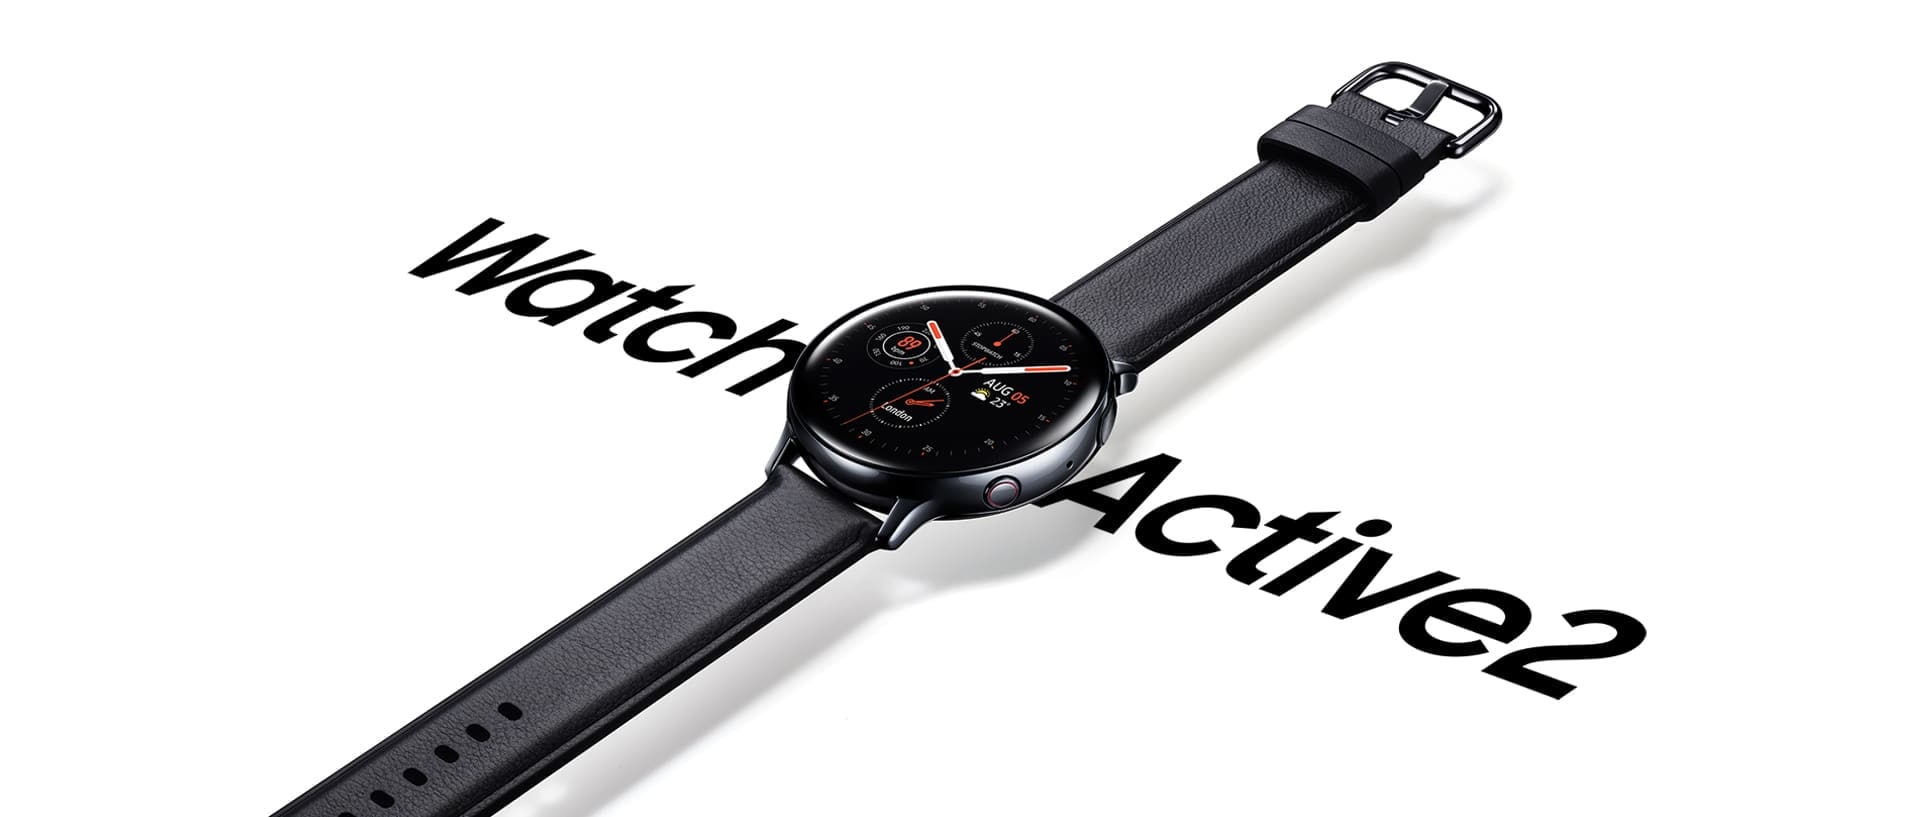 Et rustfrit, sort Galaxy Watch Active2 med sort læderrem, der hænger over ordene 'Watch Active 2' skrevet med store bogstaver nedenunder.